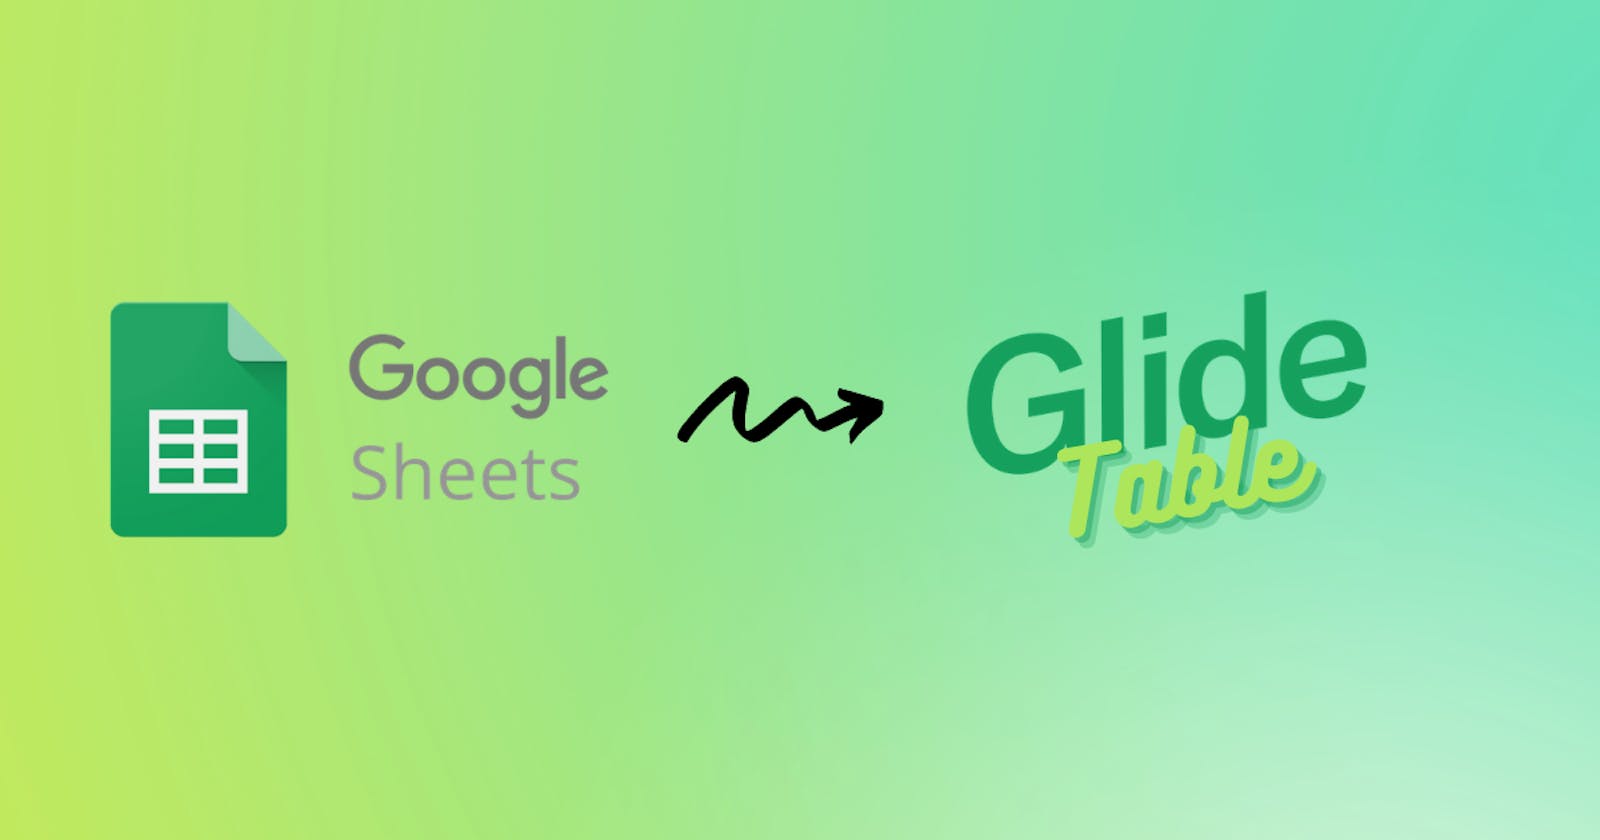 Voici comment transférer des données Google Sheets vers Glide Table.